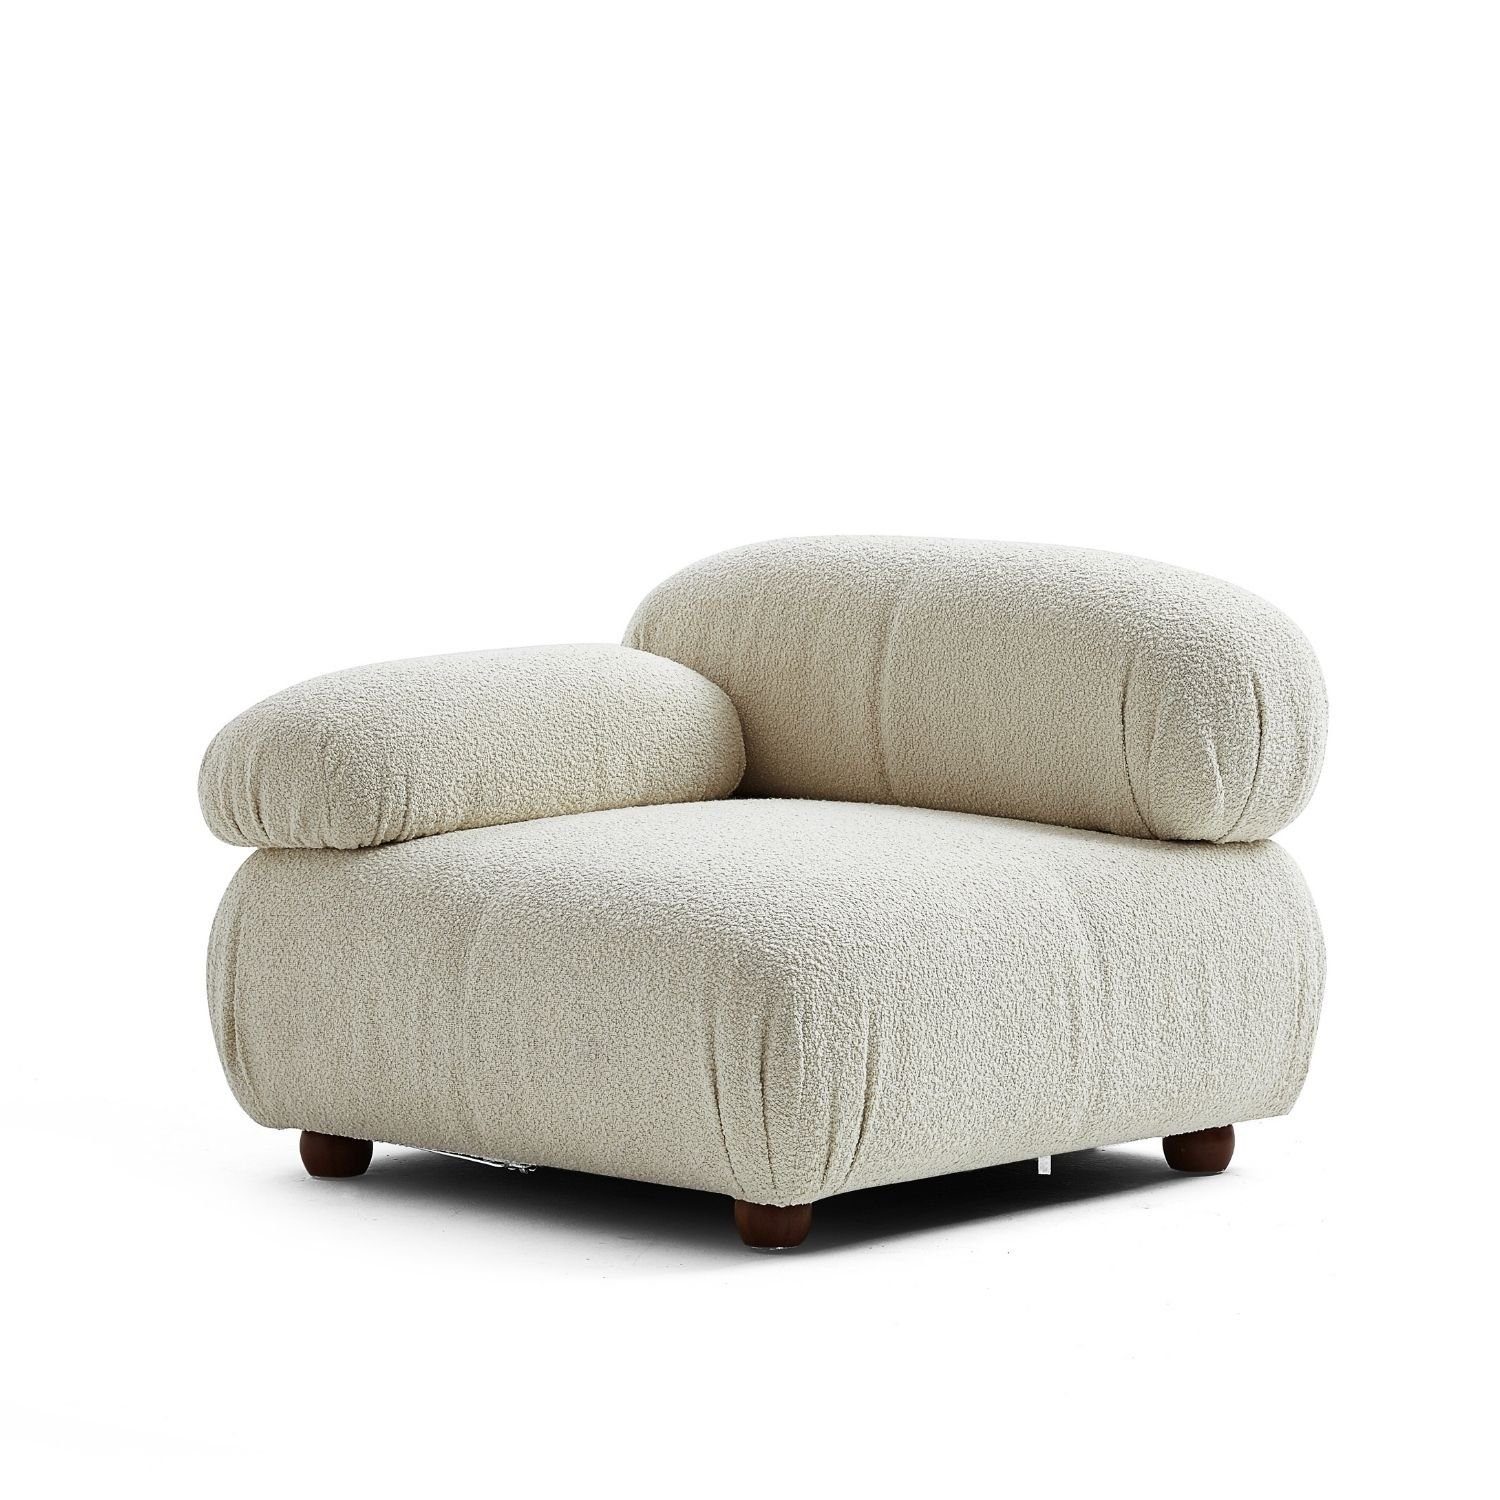 Touch me Sofa Knuffiges Sitzmöbel neueste Generation aus Komfortschaum Weiß-Beige-Lieferung und Aufbau im Preis enthalten!